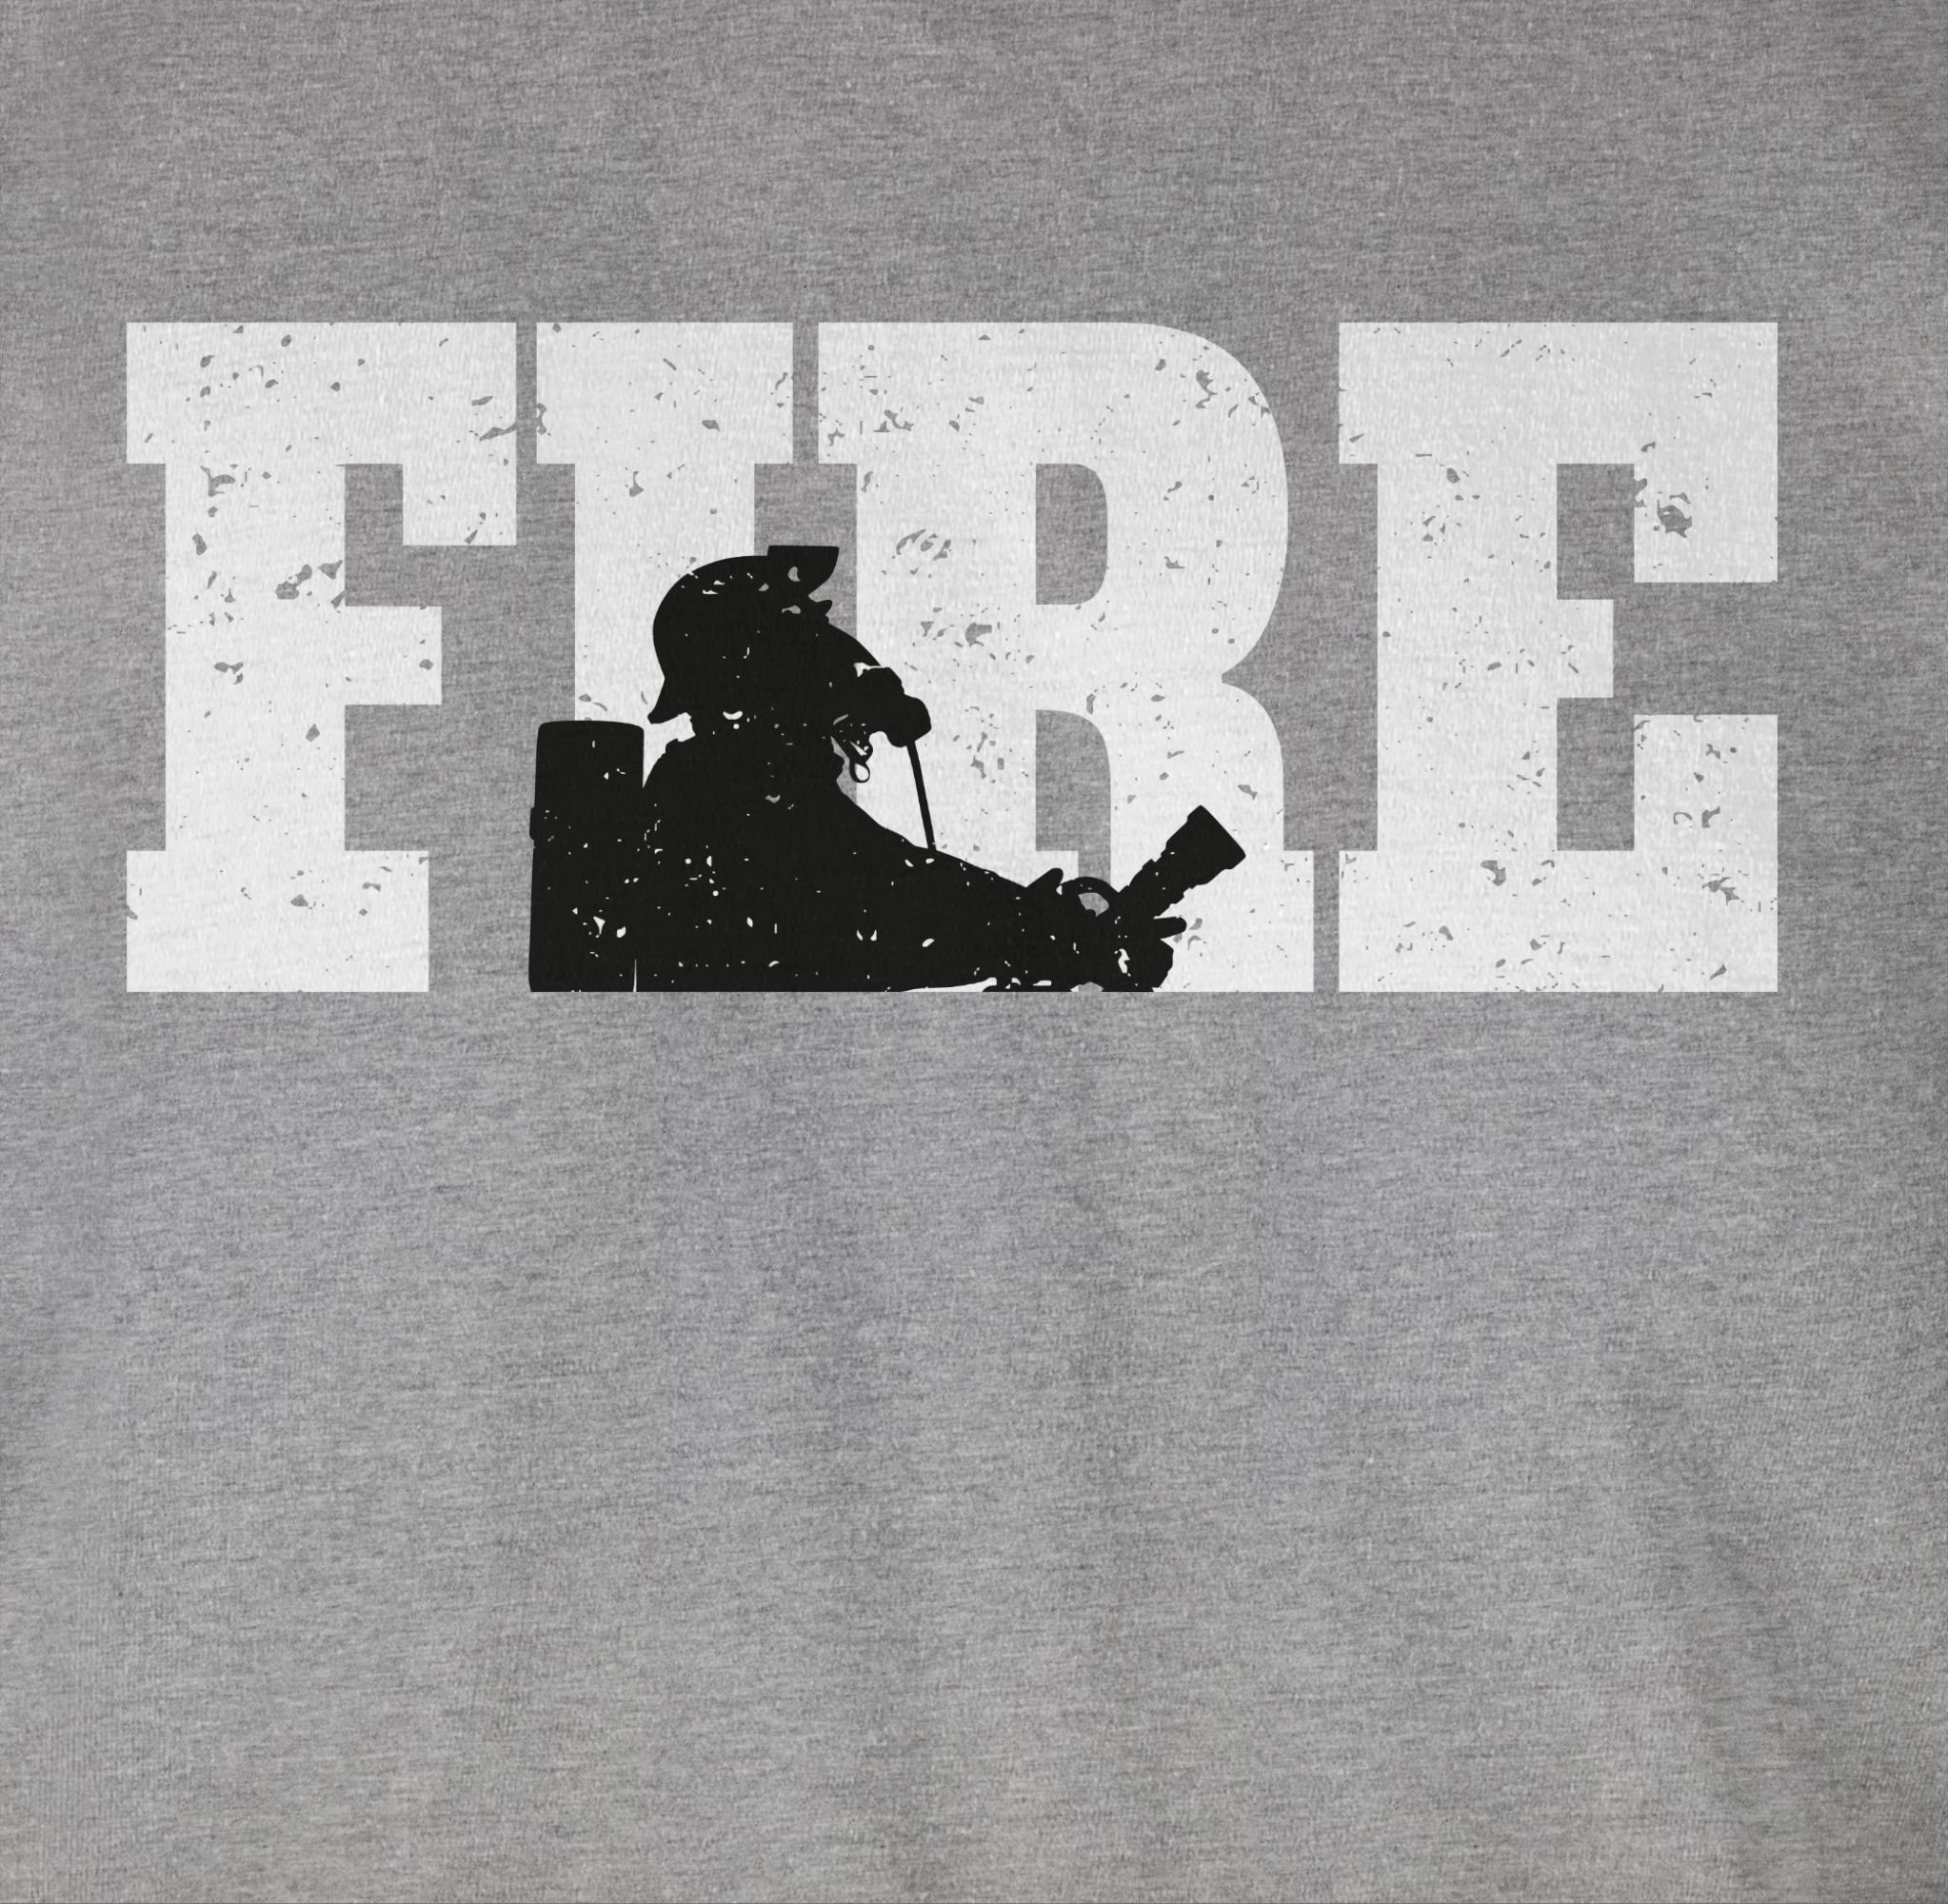 Feuerwehr 3 meliert Fire Grau T-Shirt Shirtracer